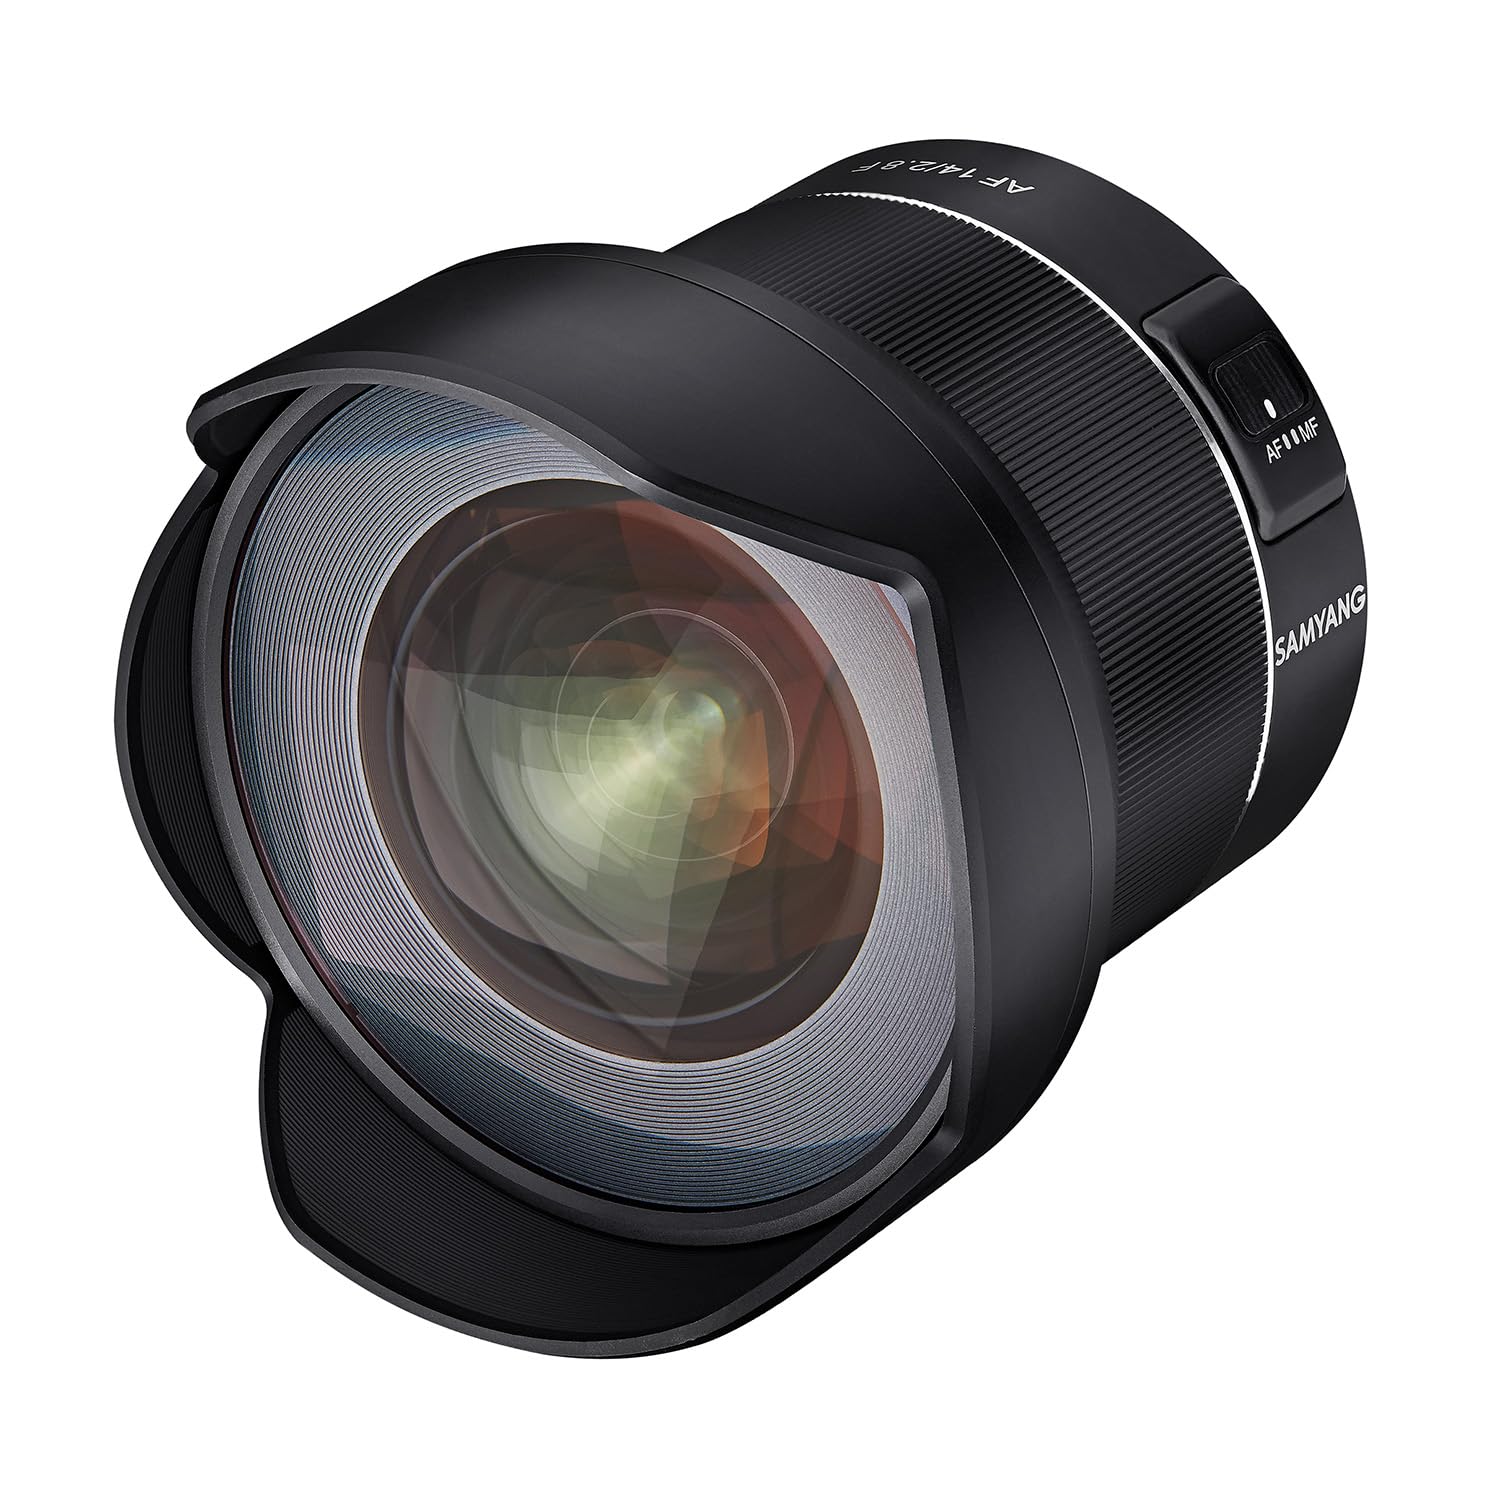 SAMYANG AF 14mm F2,8 kompatibel mit Nikon F - Autofokus Ultra Weitwinkel Objektiv mit 14 mm Festbrennweite für Vollformat Nikon DSLR Spiegelreflex Kameras mit Nikon-F Mount, Metallgehäuse